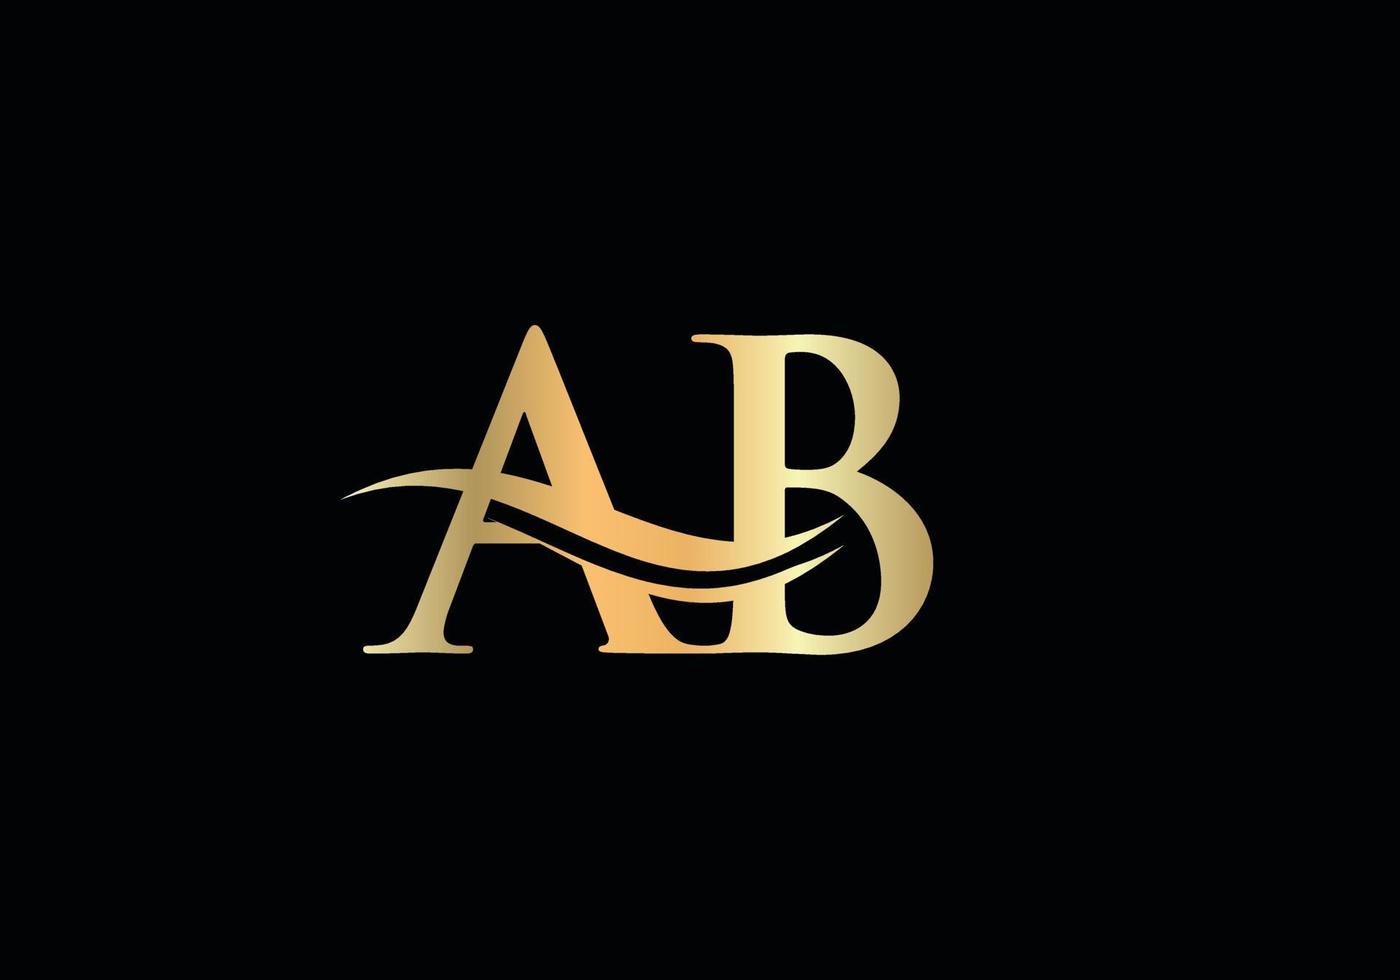 logo ab lié pour l'entreprise et l'identité de l'entreprise. vecteur de logo créatif lettre ab